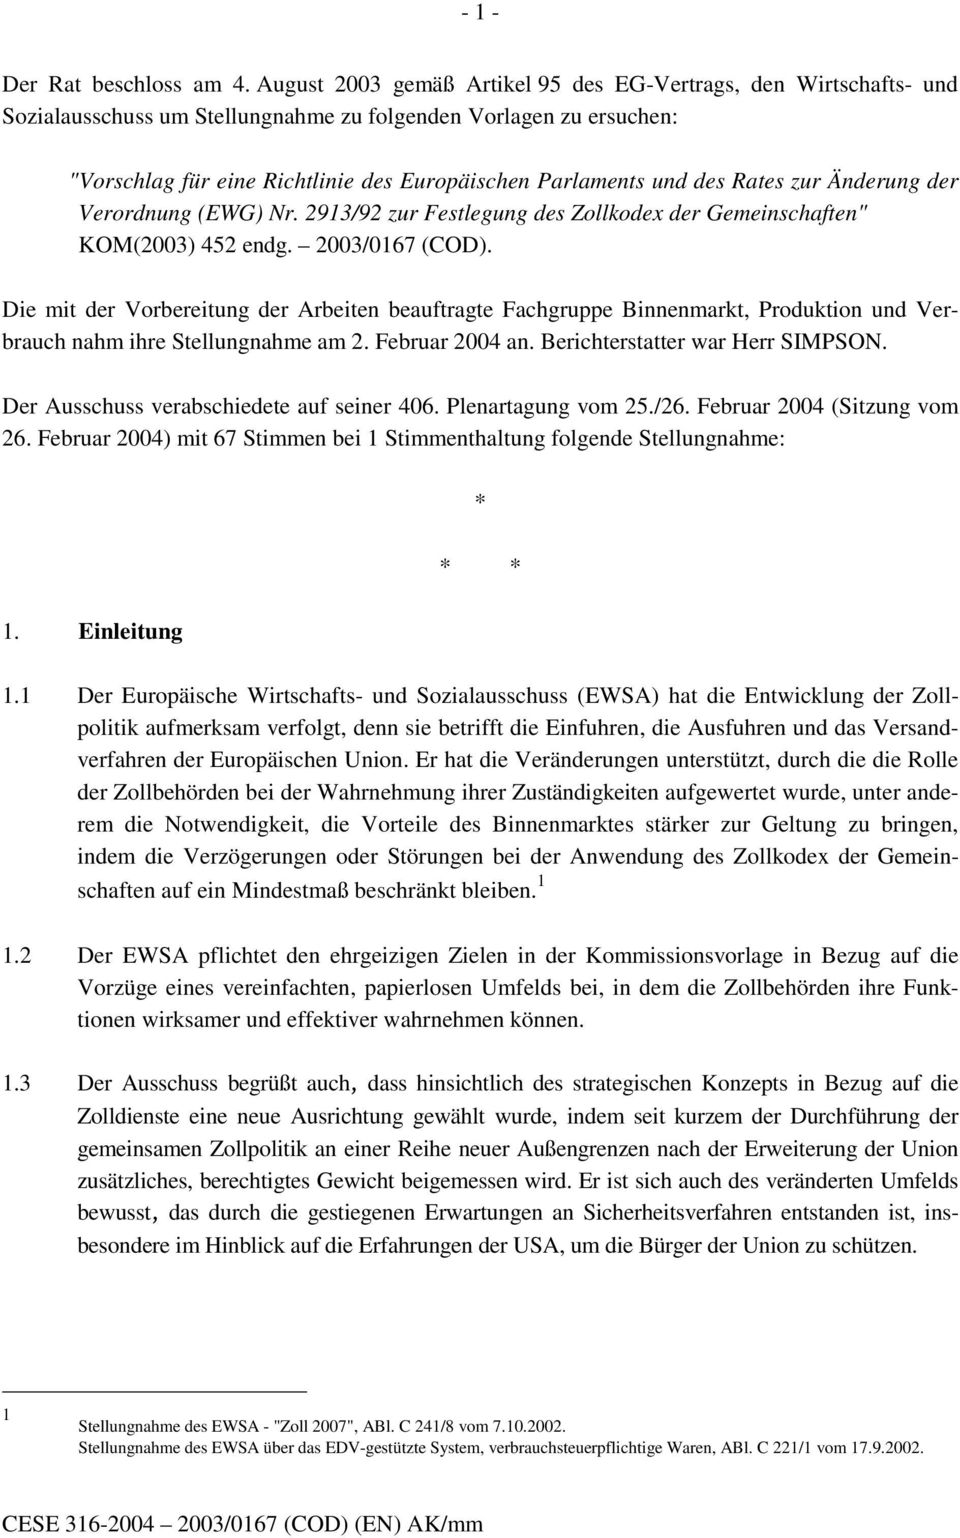 des Rates zur Änderung der Verordnung (EWG) Nr. 2913/92 zur Festlegung des Zollkodex der Gemeinschaften" KOM(2003) 452 endg. 2003/0167 (COD).